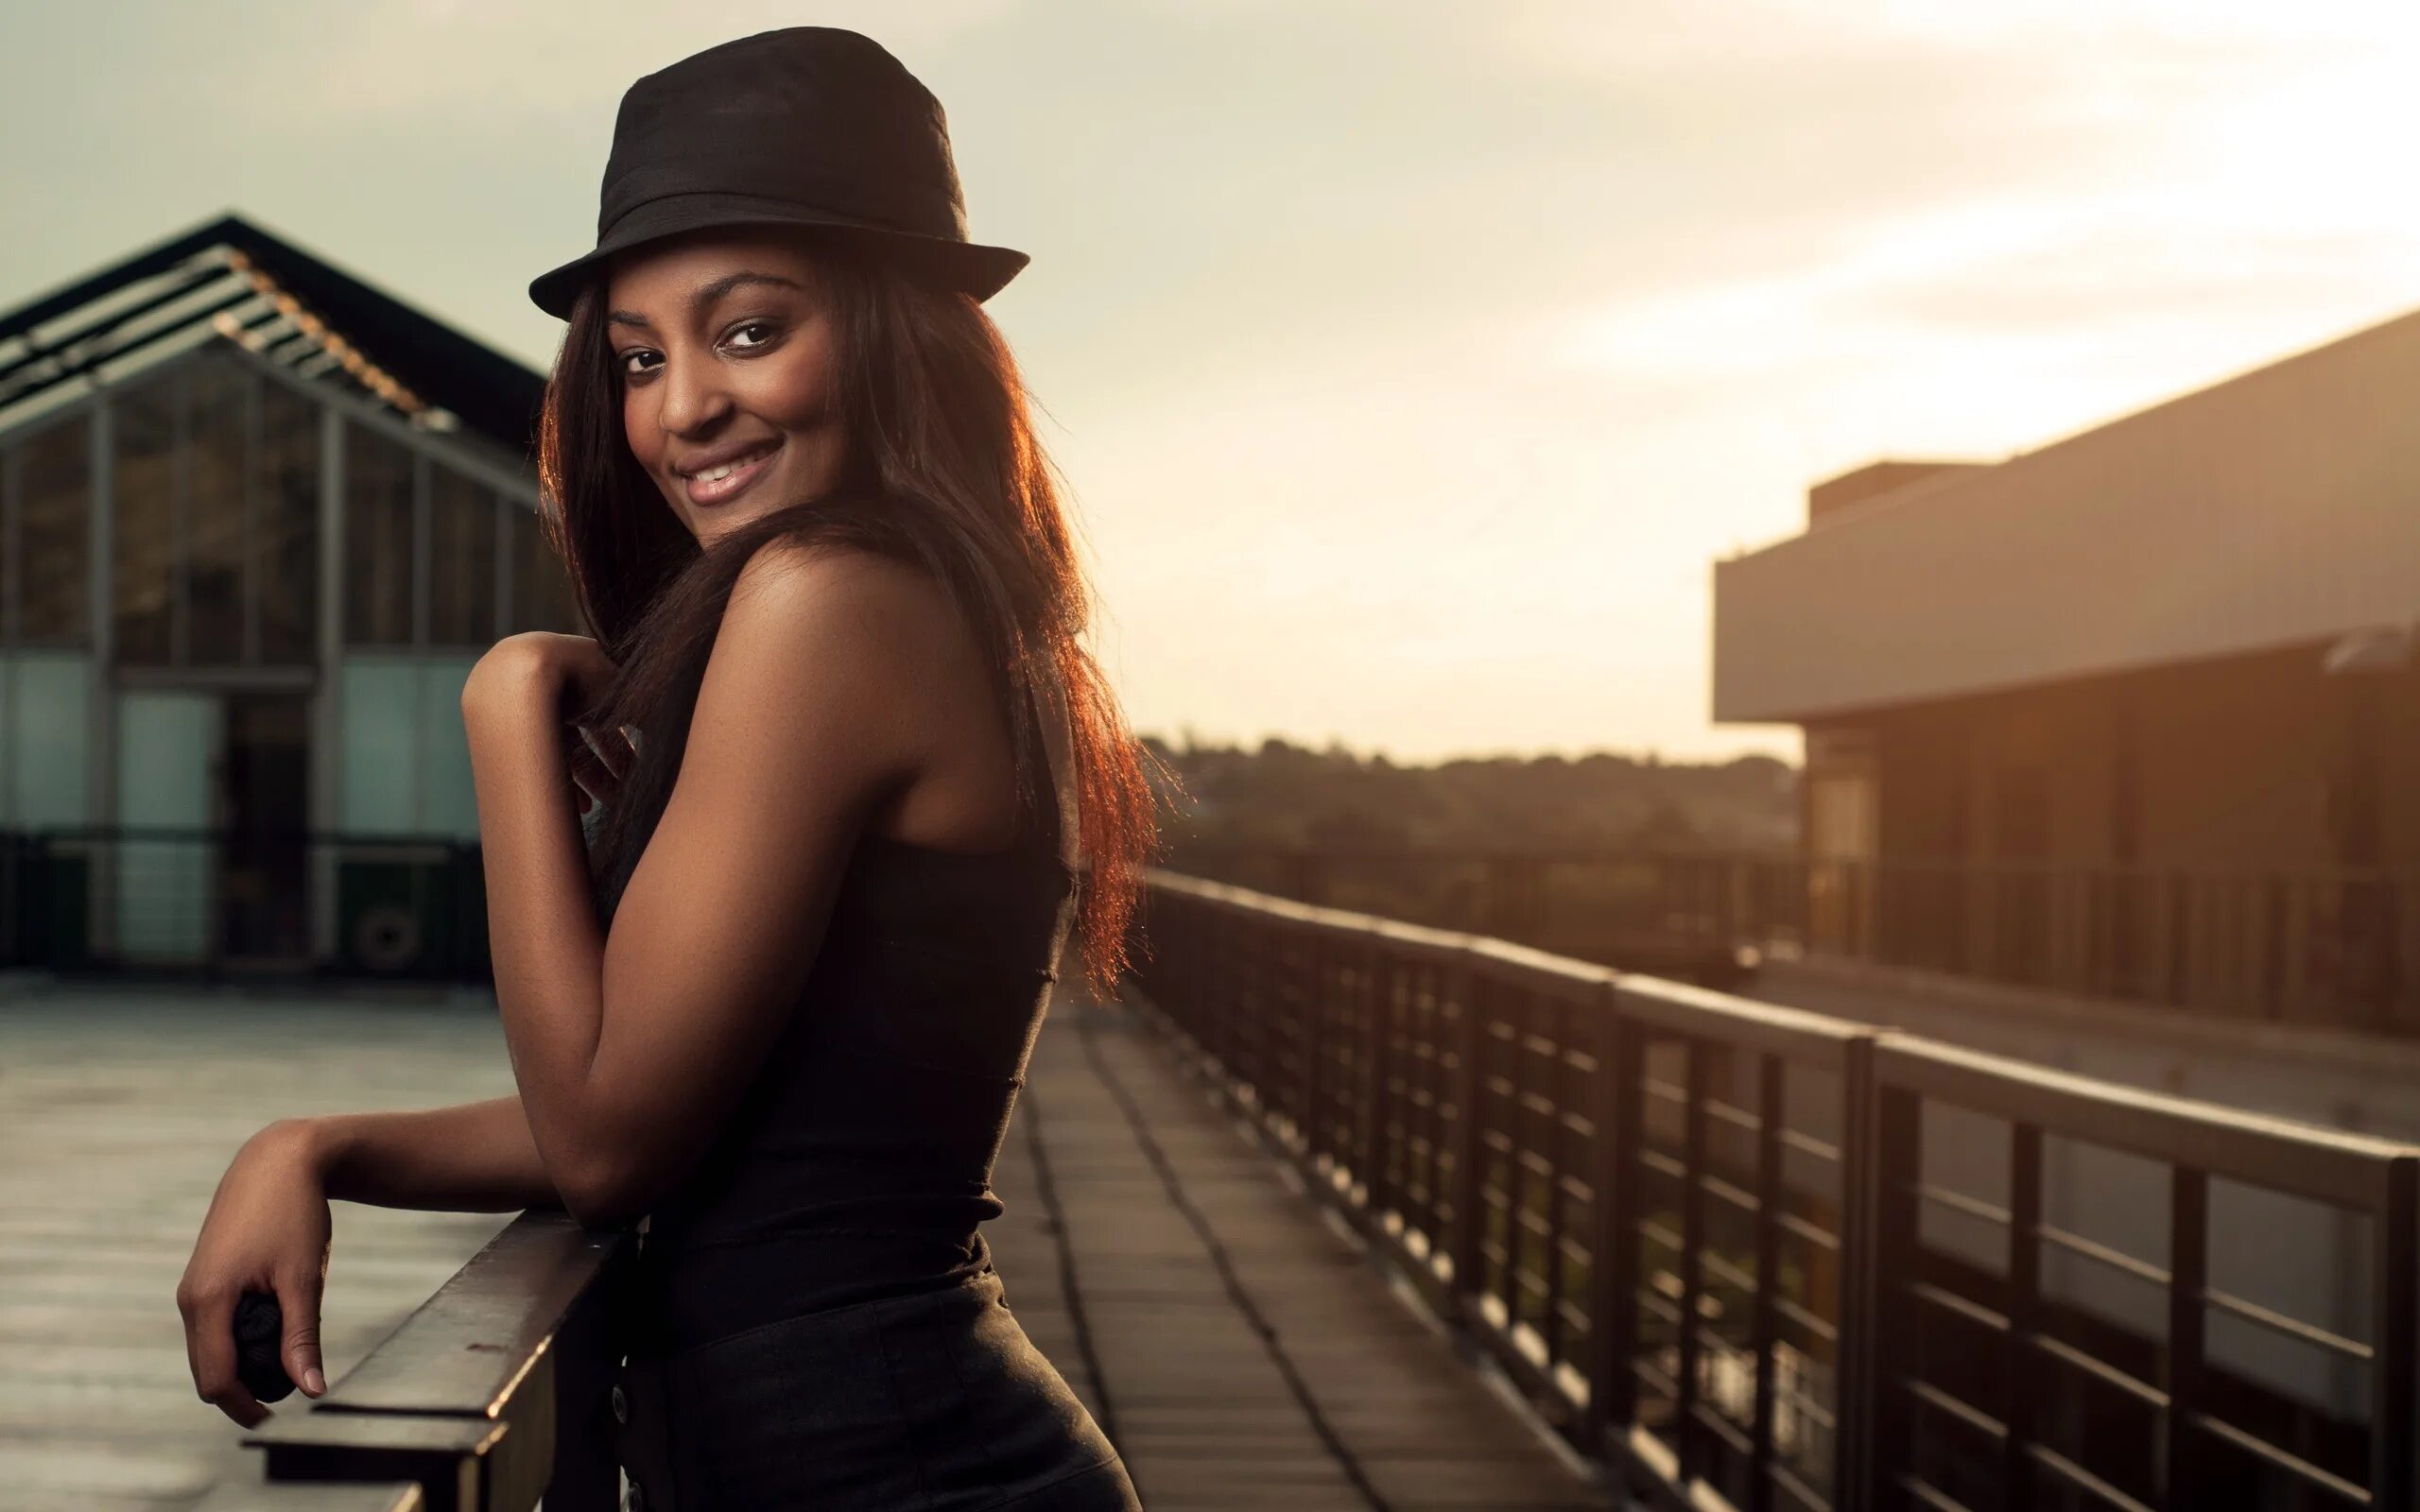 Ebony pictures. Темнокожие девушки. Девушка в черном. Темнокожая девушка в шляпе. Красивые Афроамериканские девушки.